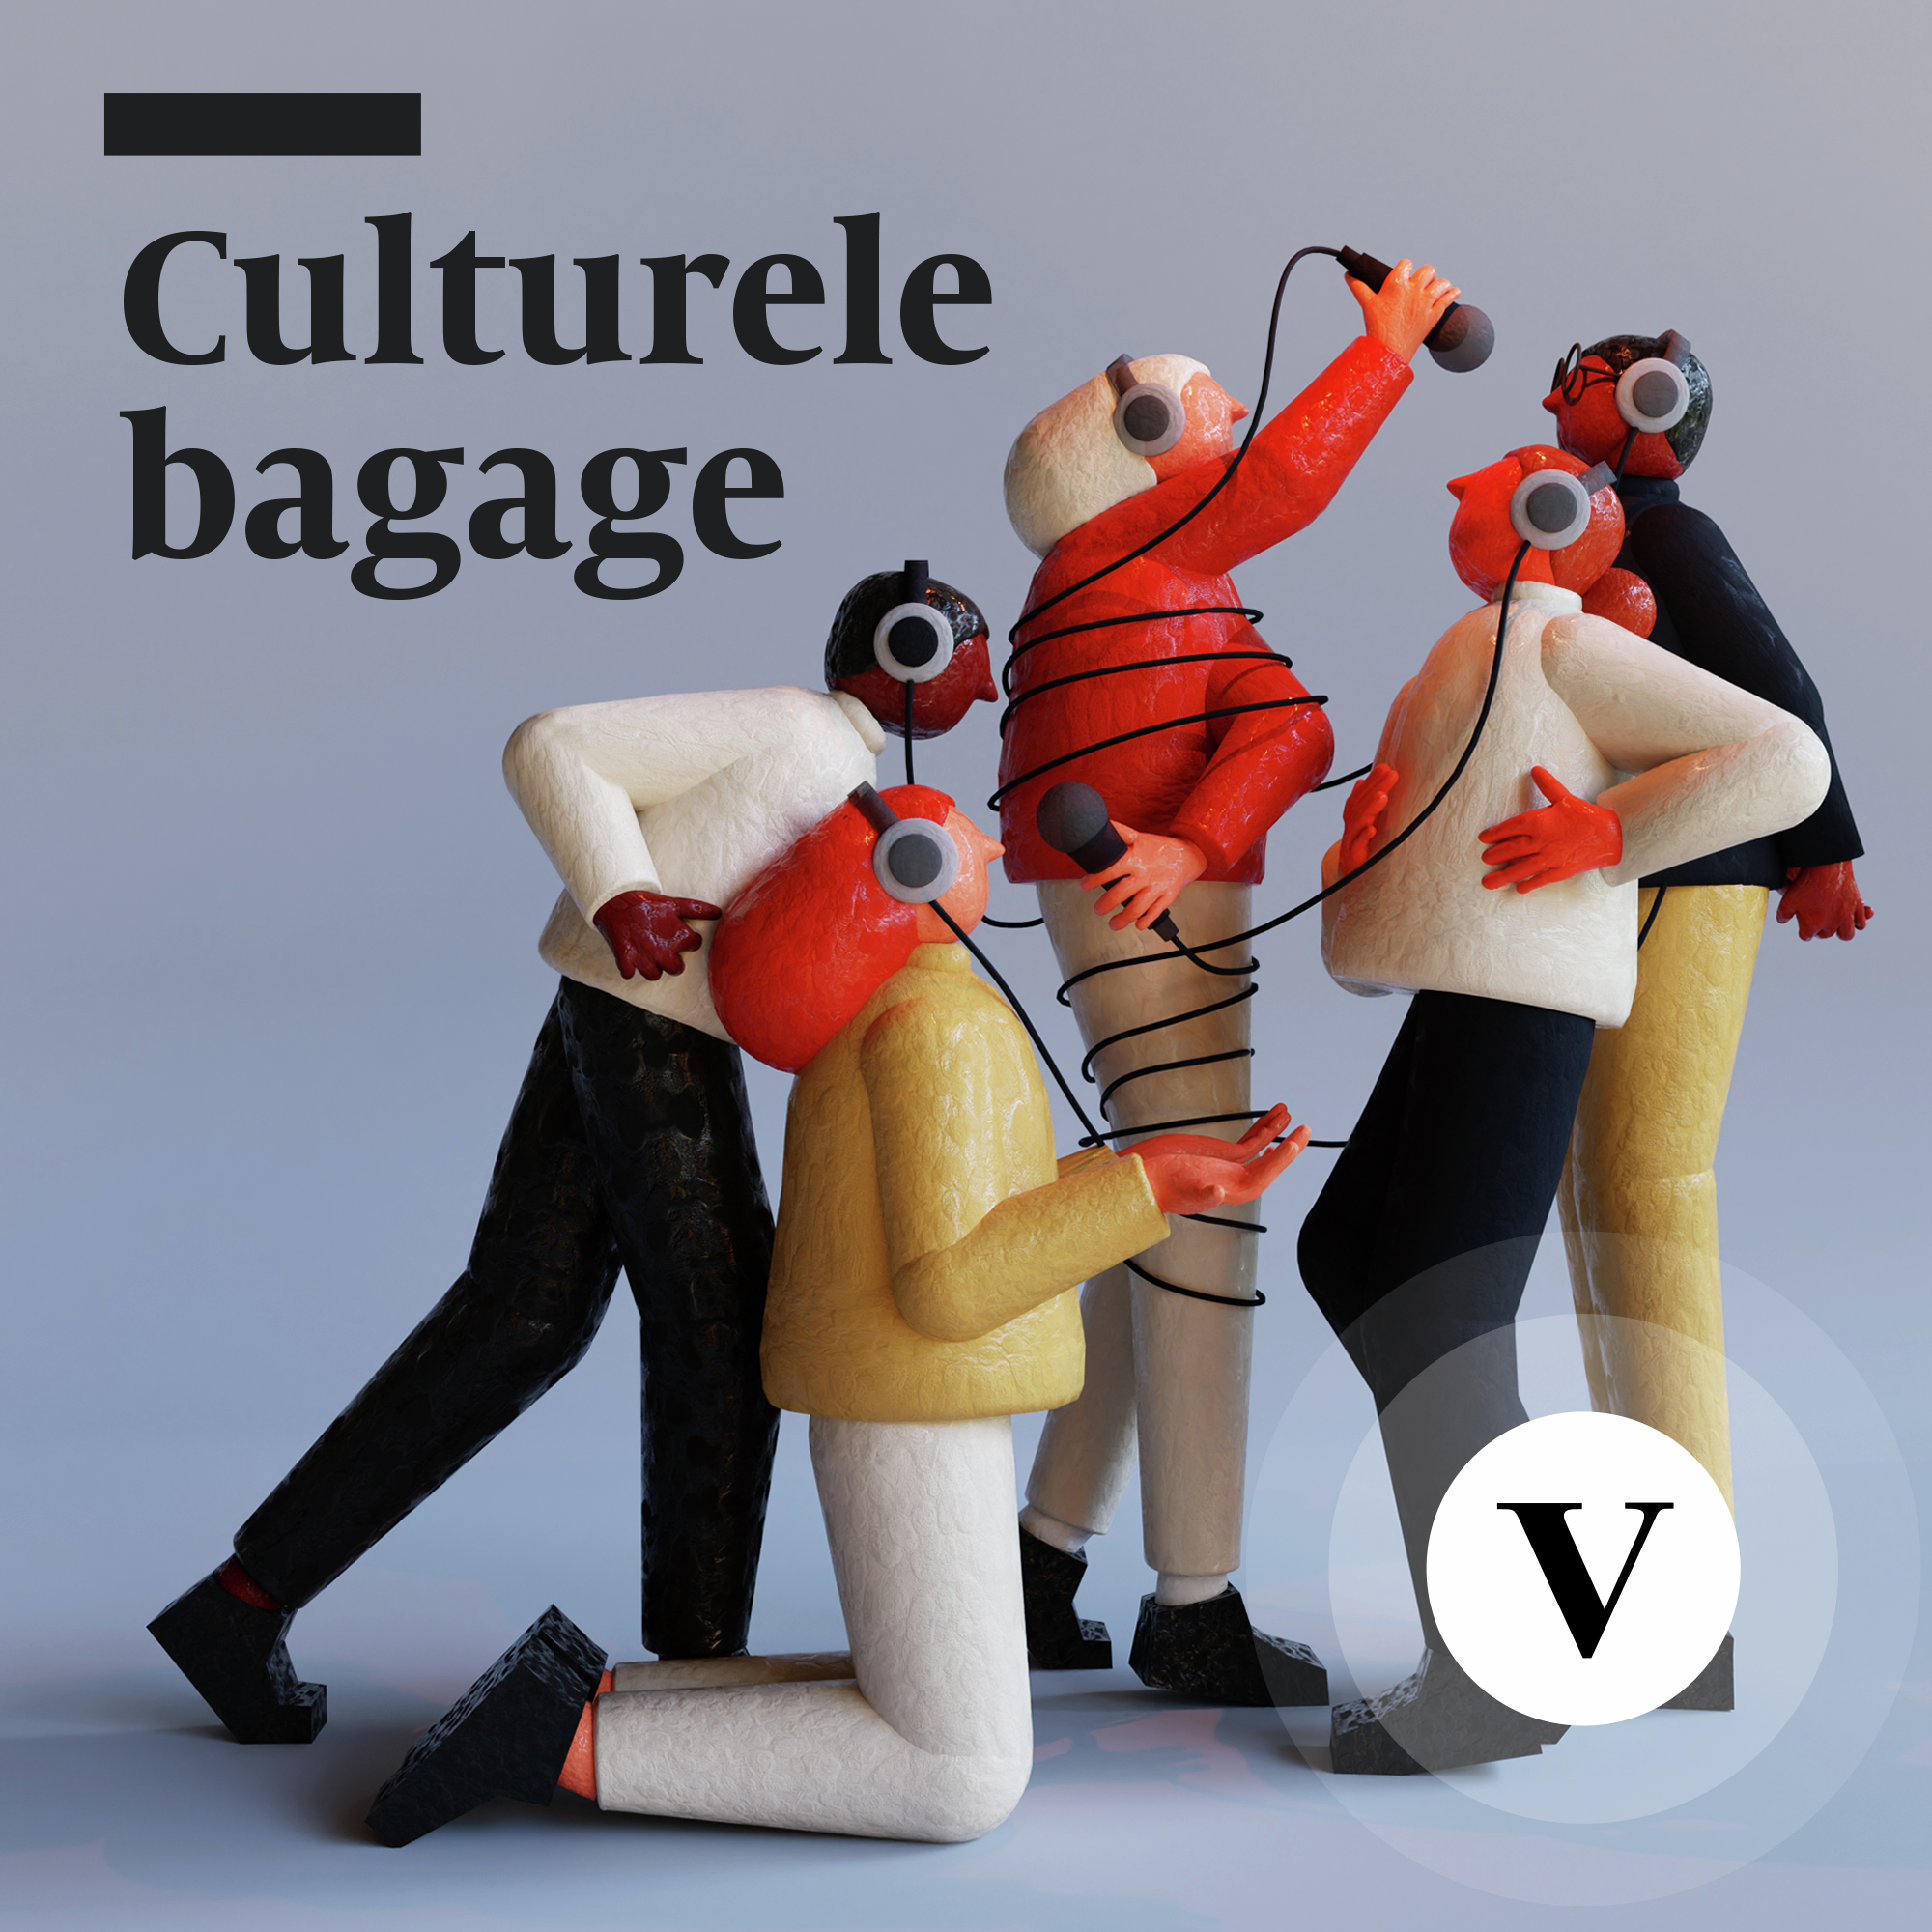 Culturele bagage